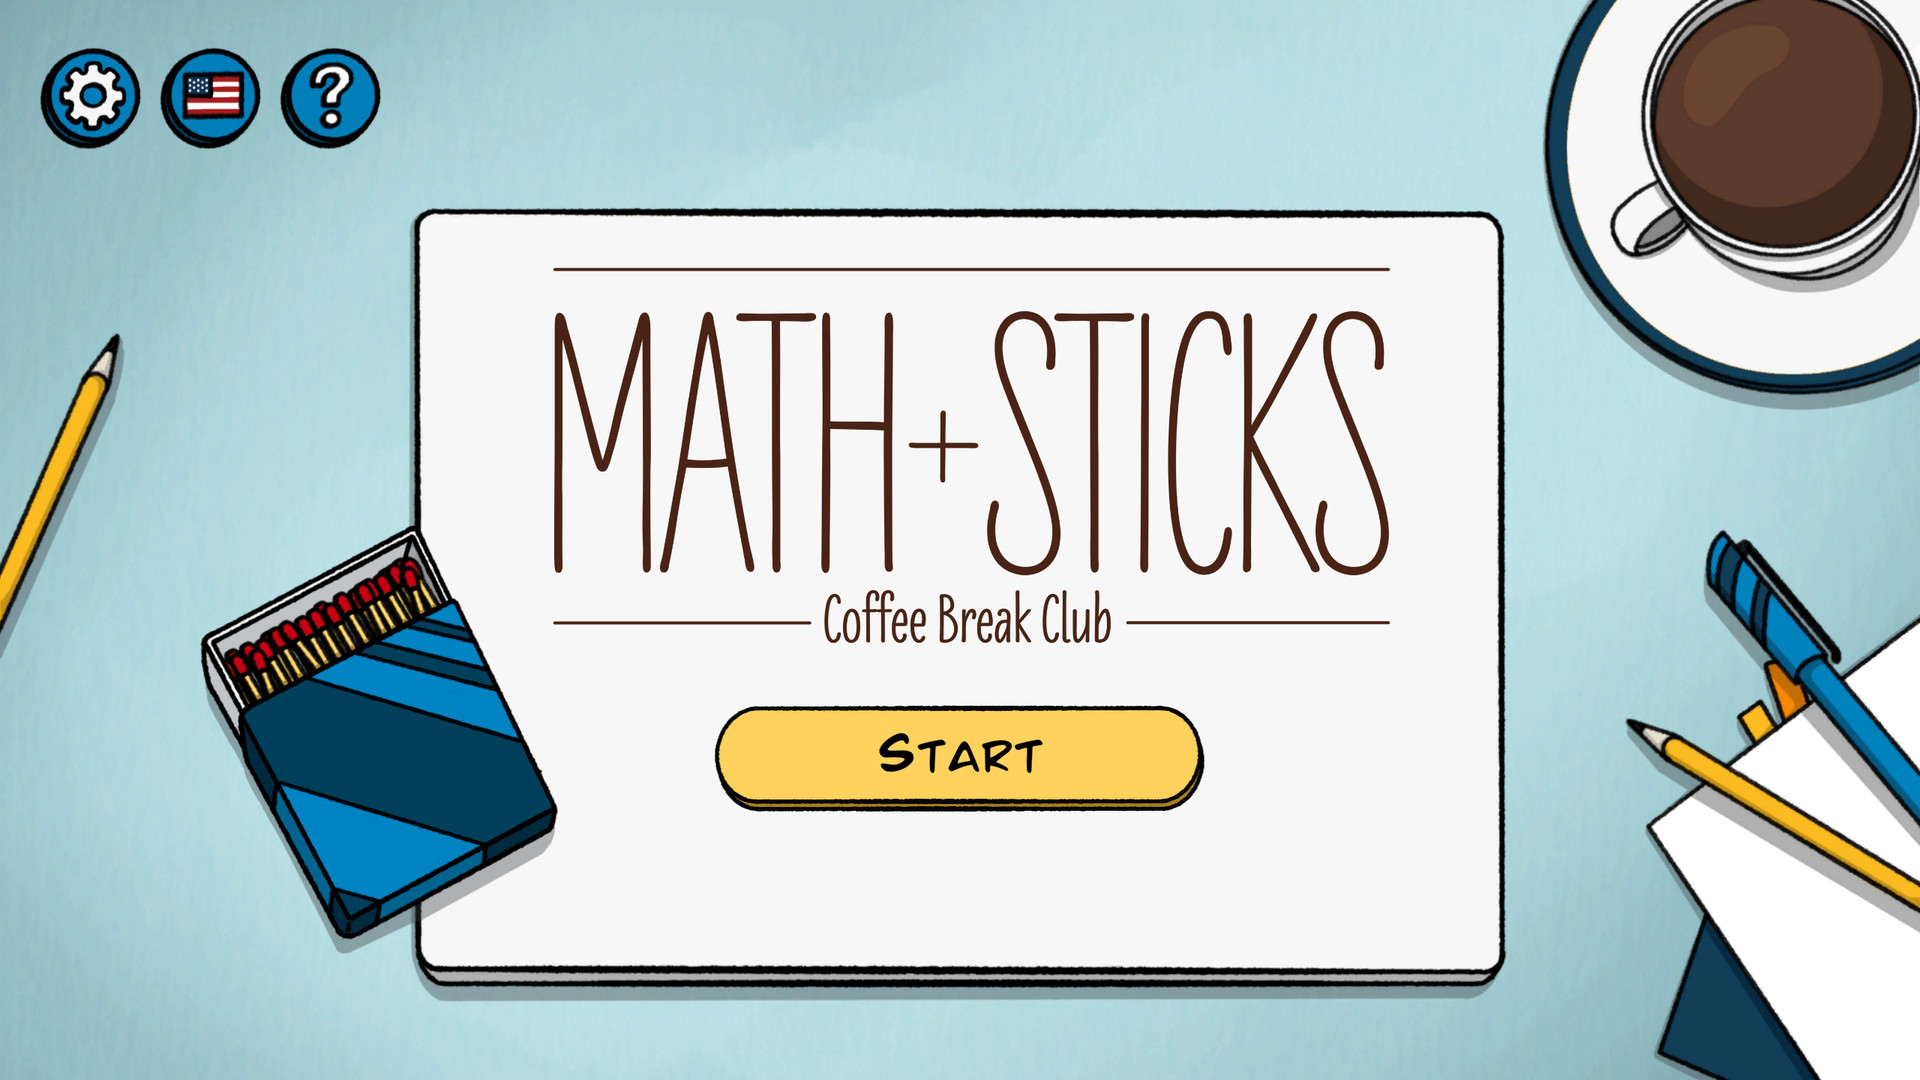 Math+Sticks – Coffee Break Club - Guía de todas las soluciones